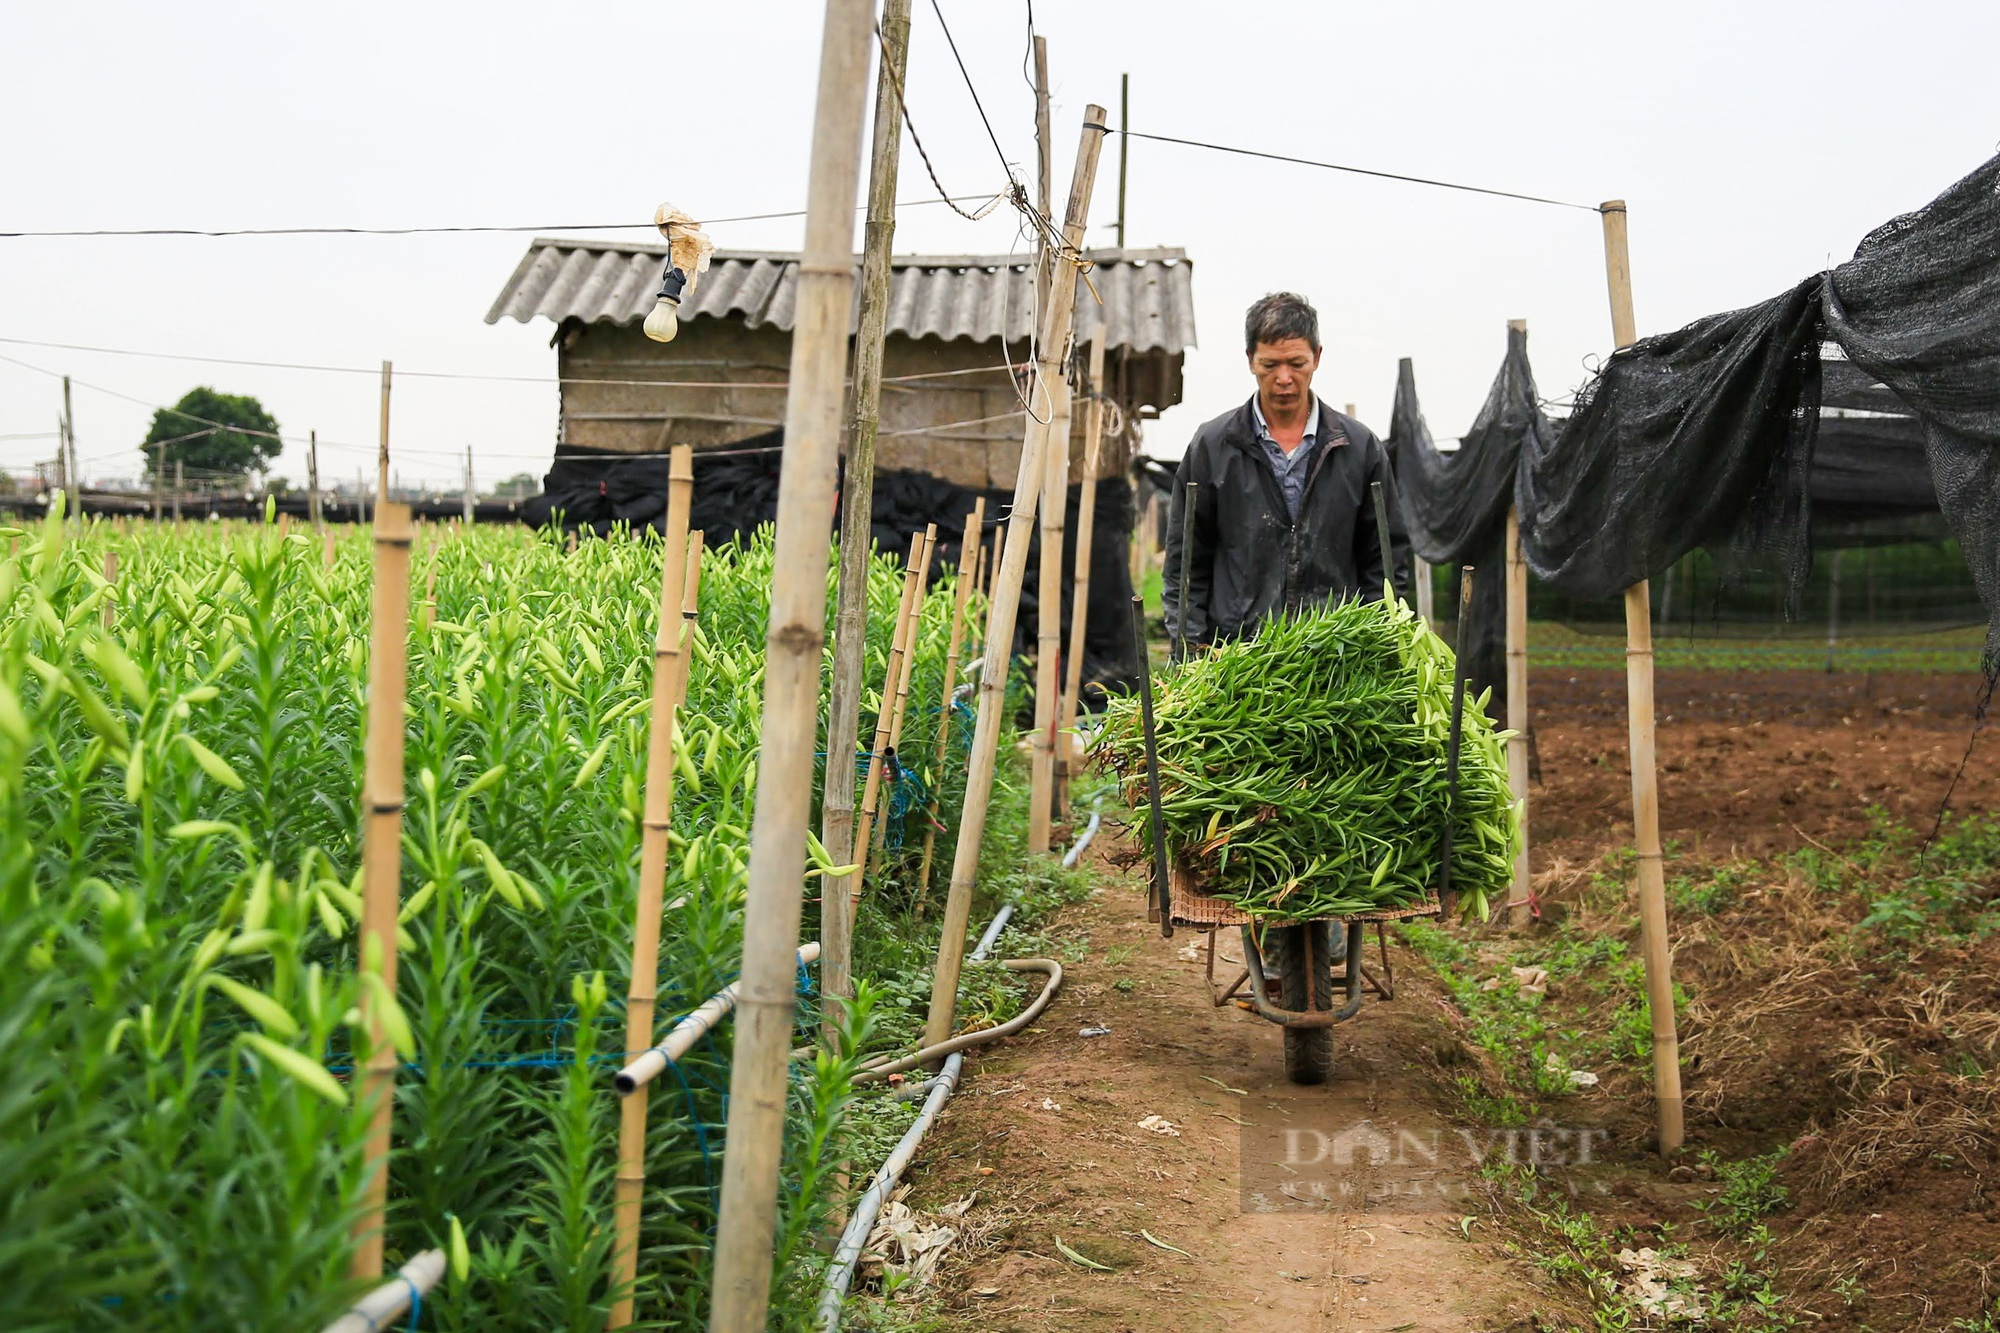 Hoa loa kèn bung nở, nông dân Hà Nội thu hàng chục triệu mỗi ngày - Ảnh 9.